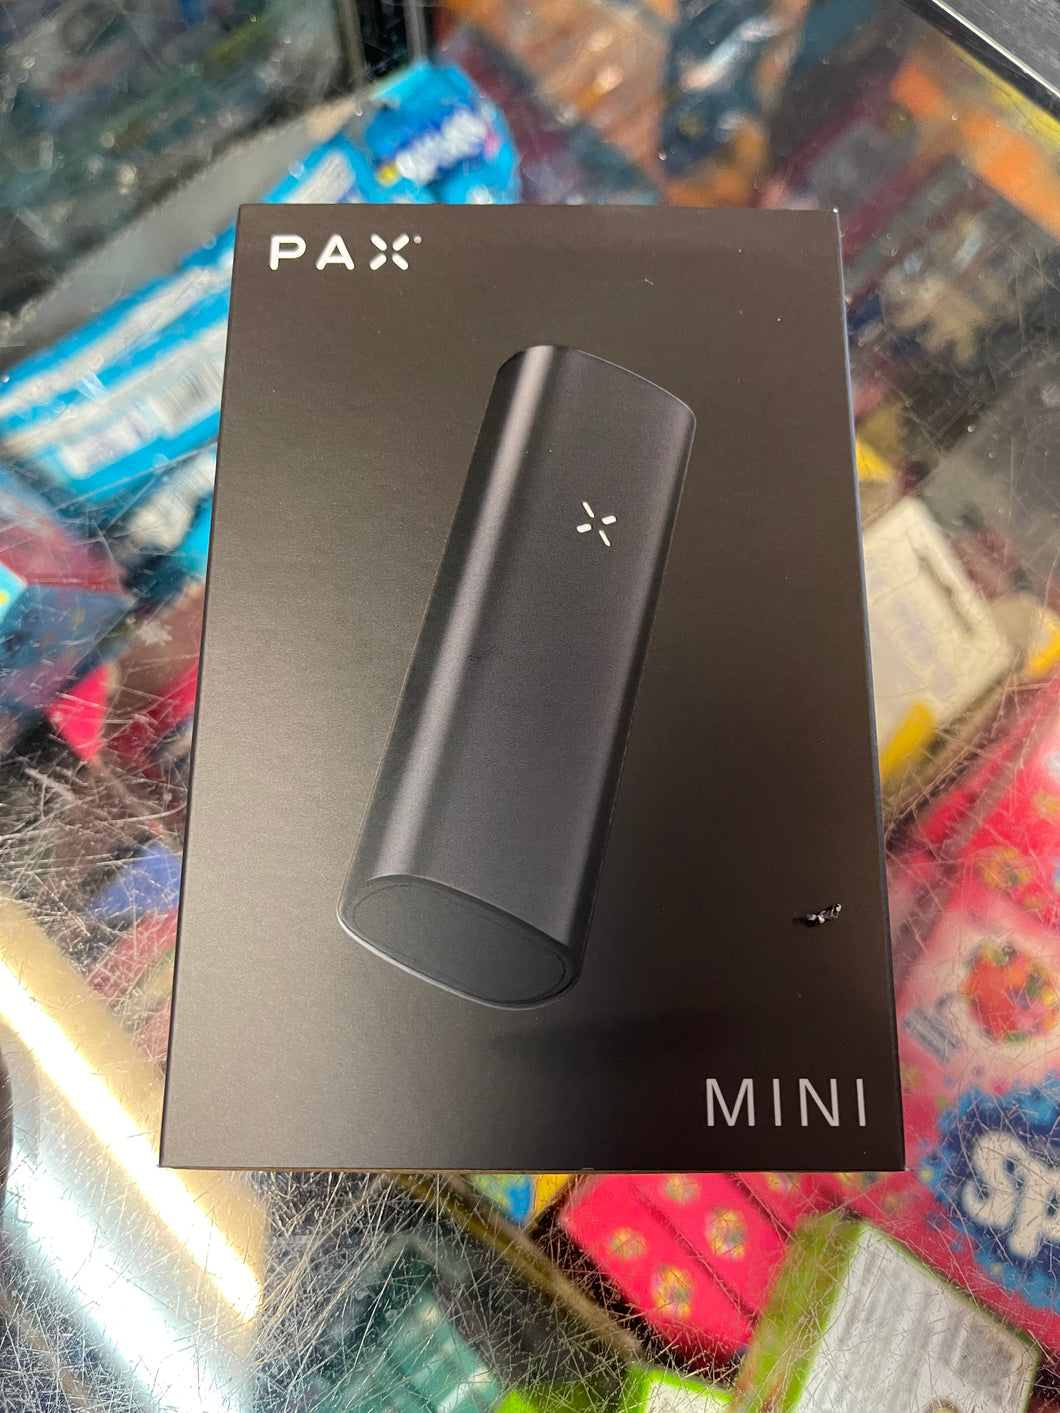 Pax mini Vaporiser